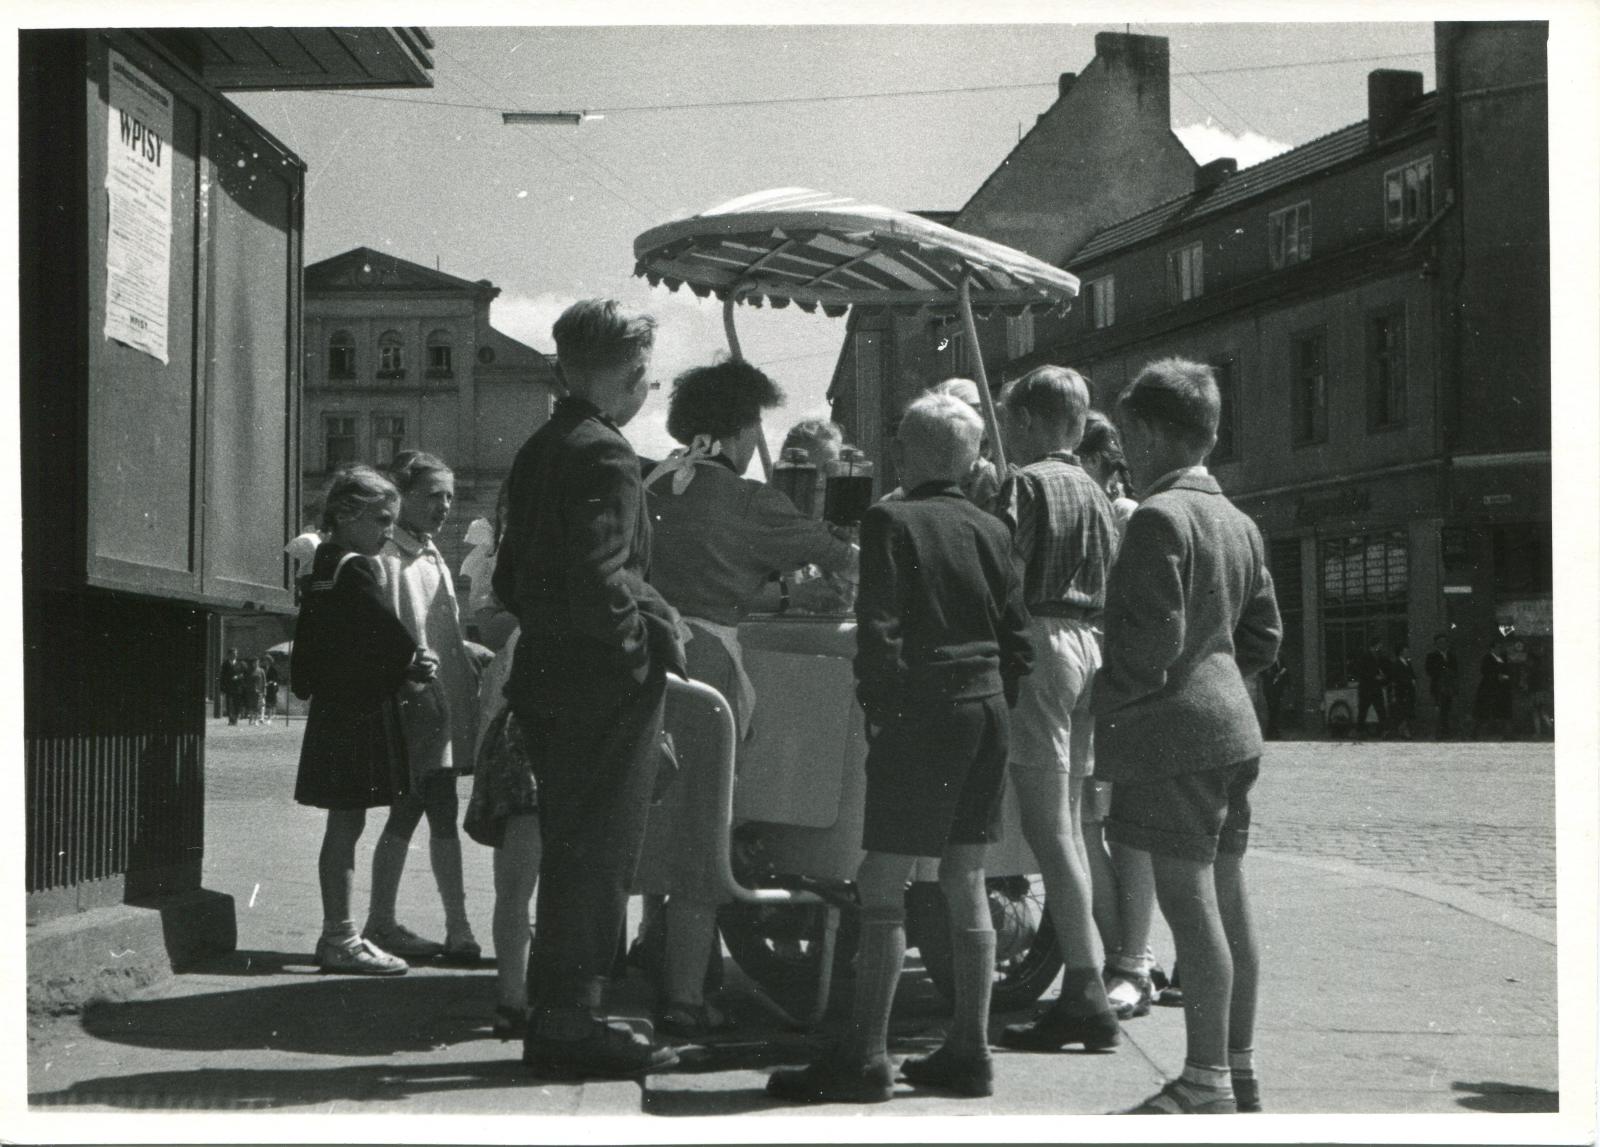 Saturator na skrzyżowaniu placu Wolności i ulicy Ozimskiej, lata 50/60. XX wieku